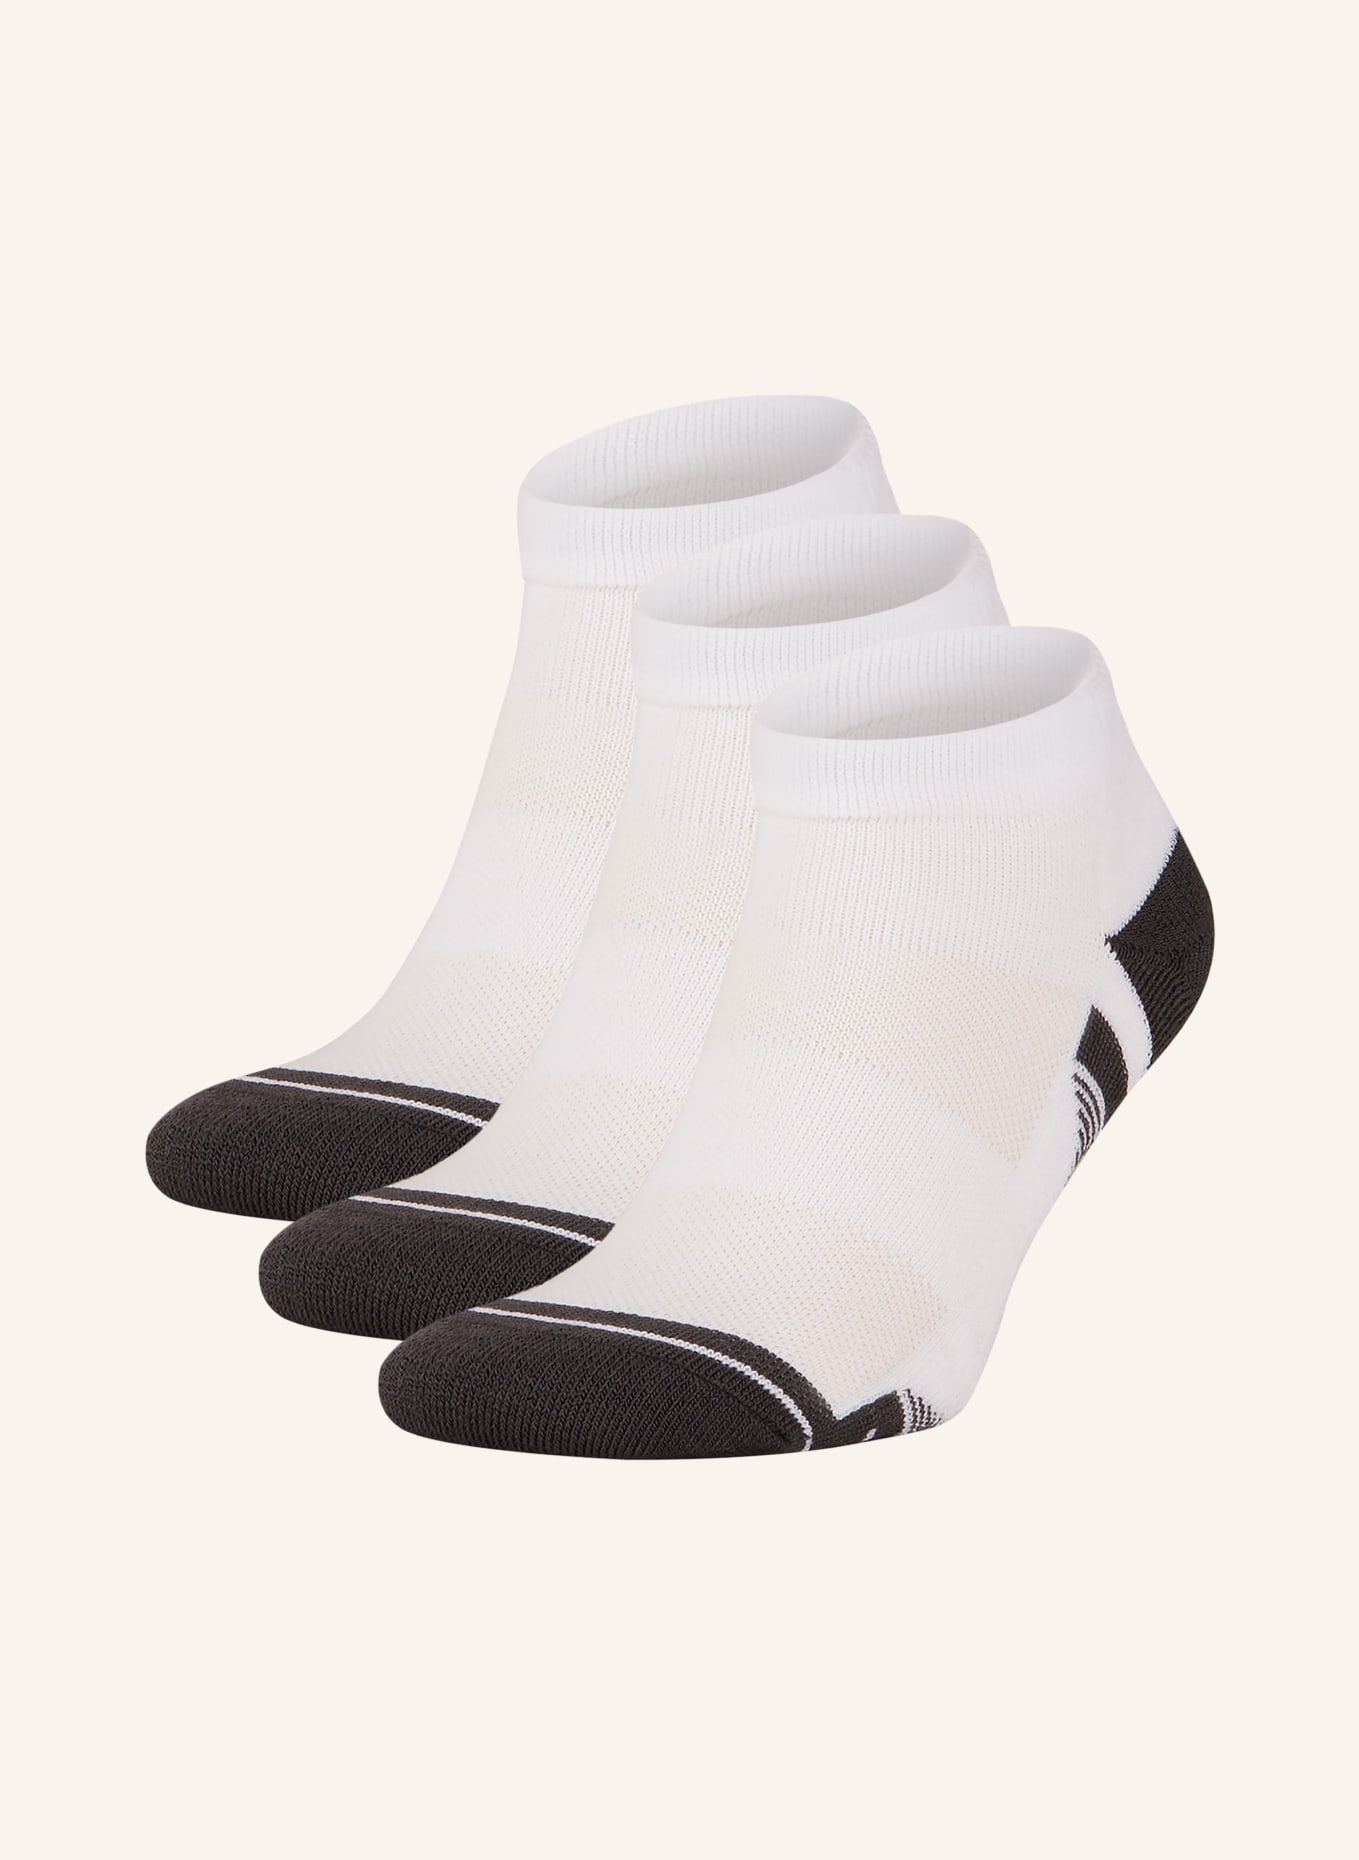 UNDER ARMOUR 3er-Pack Socken PEROFMRANCE TECH in 100 white